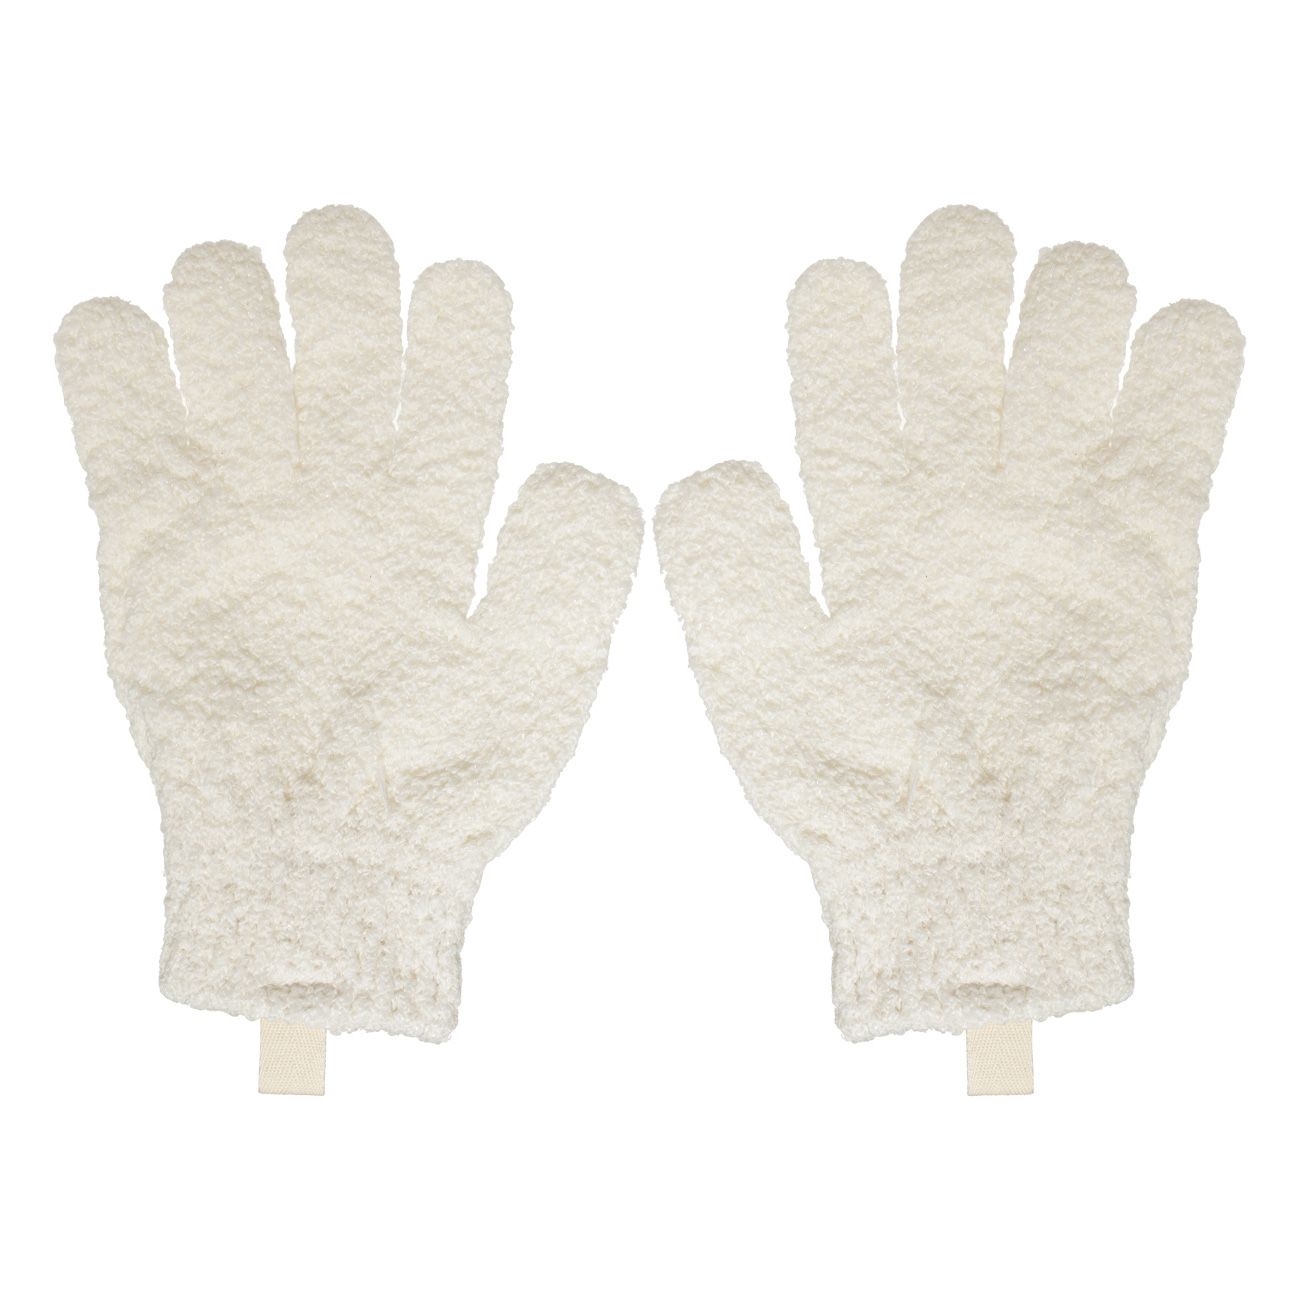 Перчатка для мытья тела Kuchenland отшелушивающая, полиэстер, молочная, 21 см, 2 шт мочалка губка для мытья тела 5х10 см отшелушивающая люфа eco life